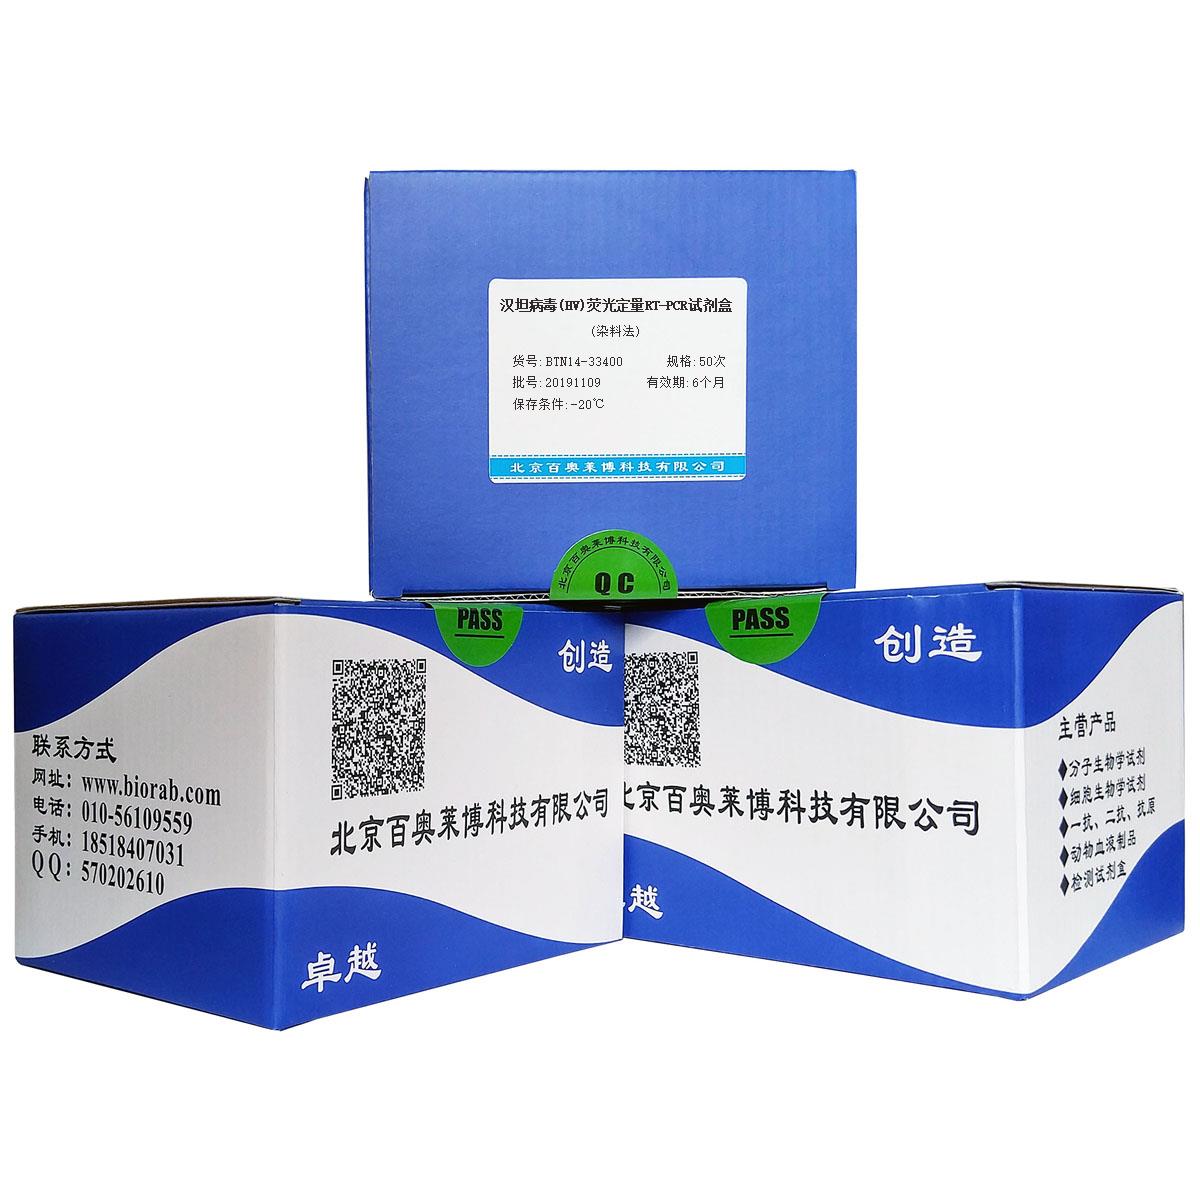 汉坦病毒(HV)荧光定量RT-PCR试剂盒(染料法)